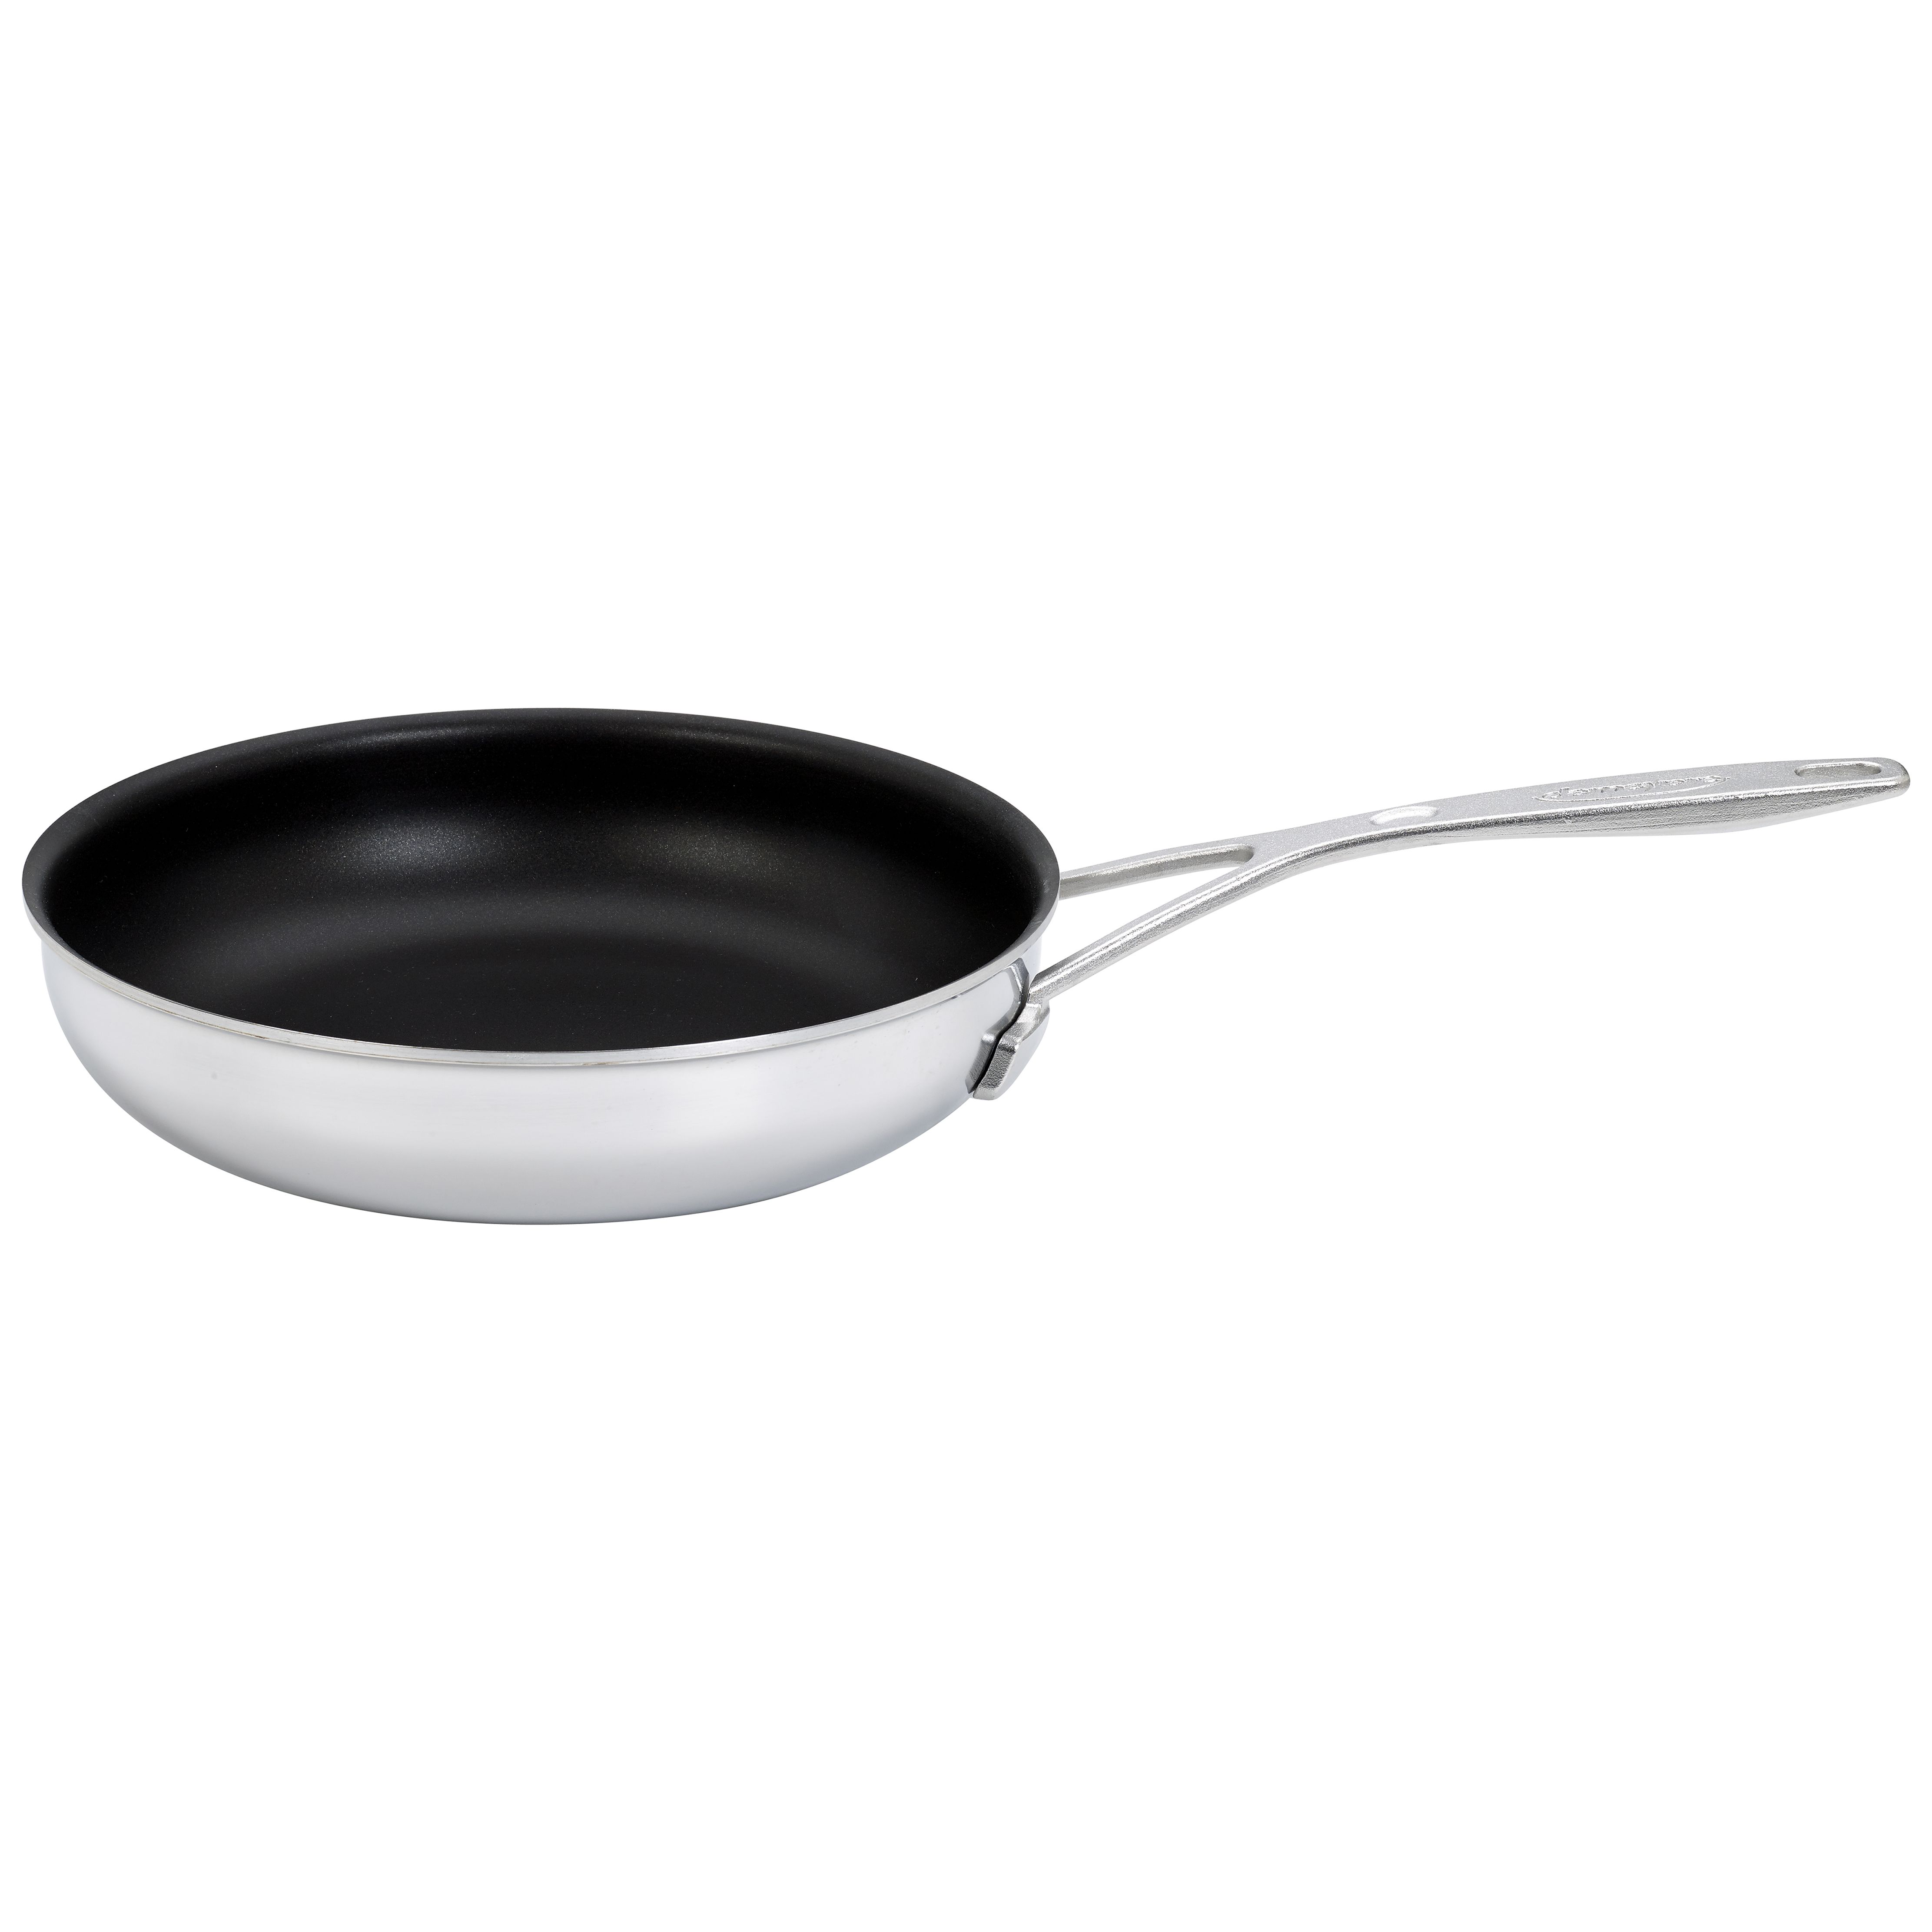 5 inch frying pan